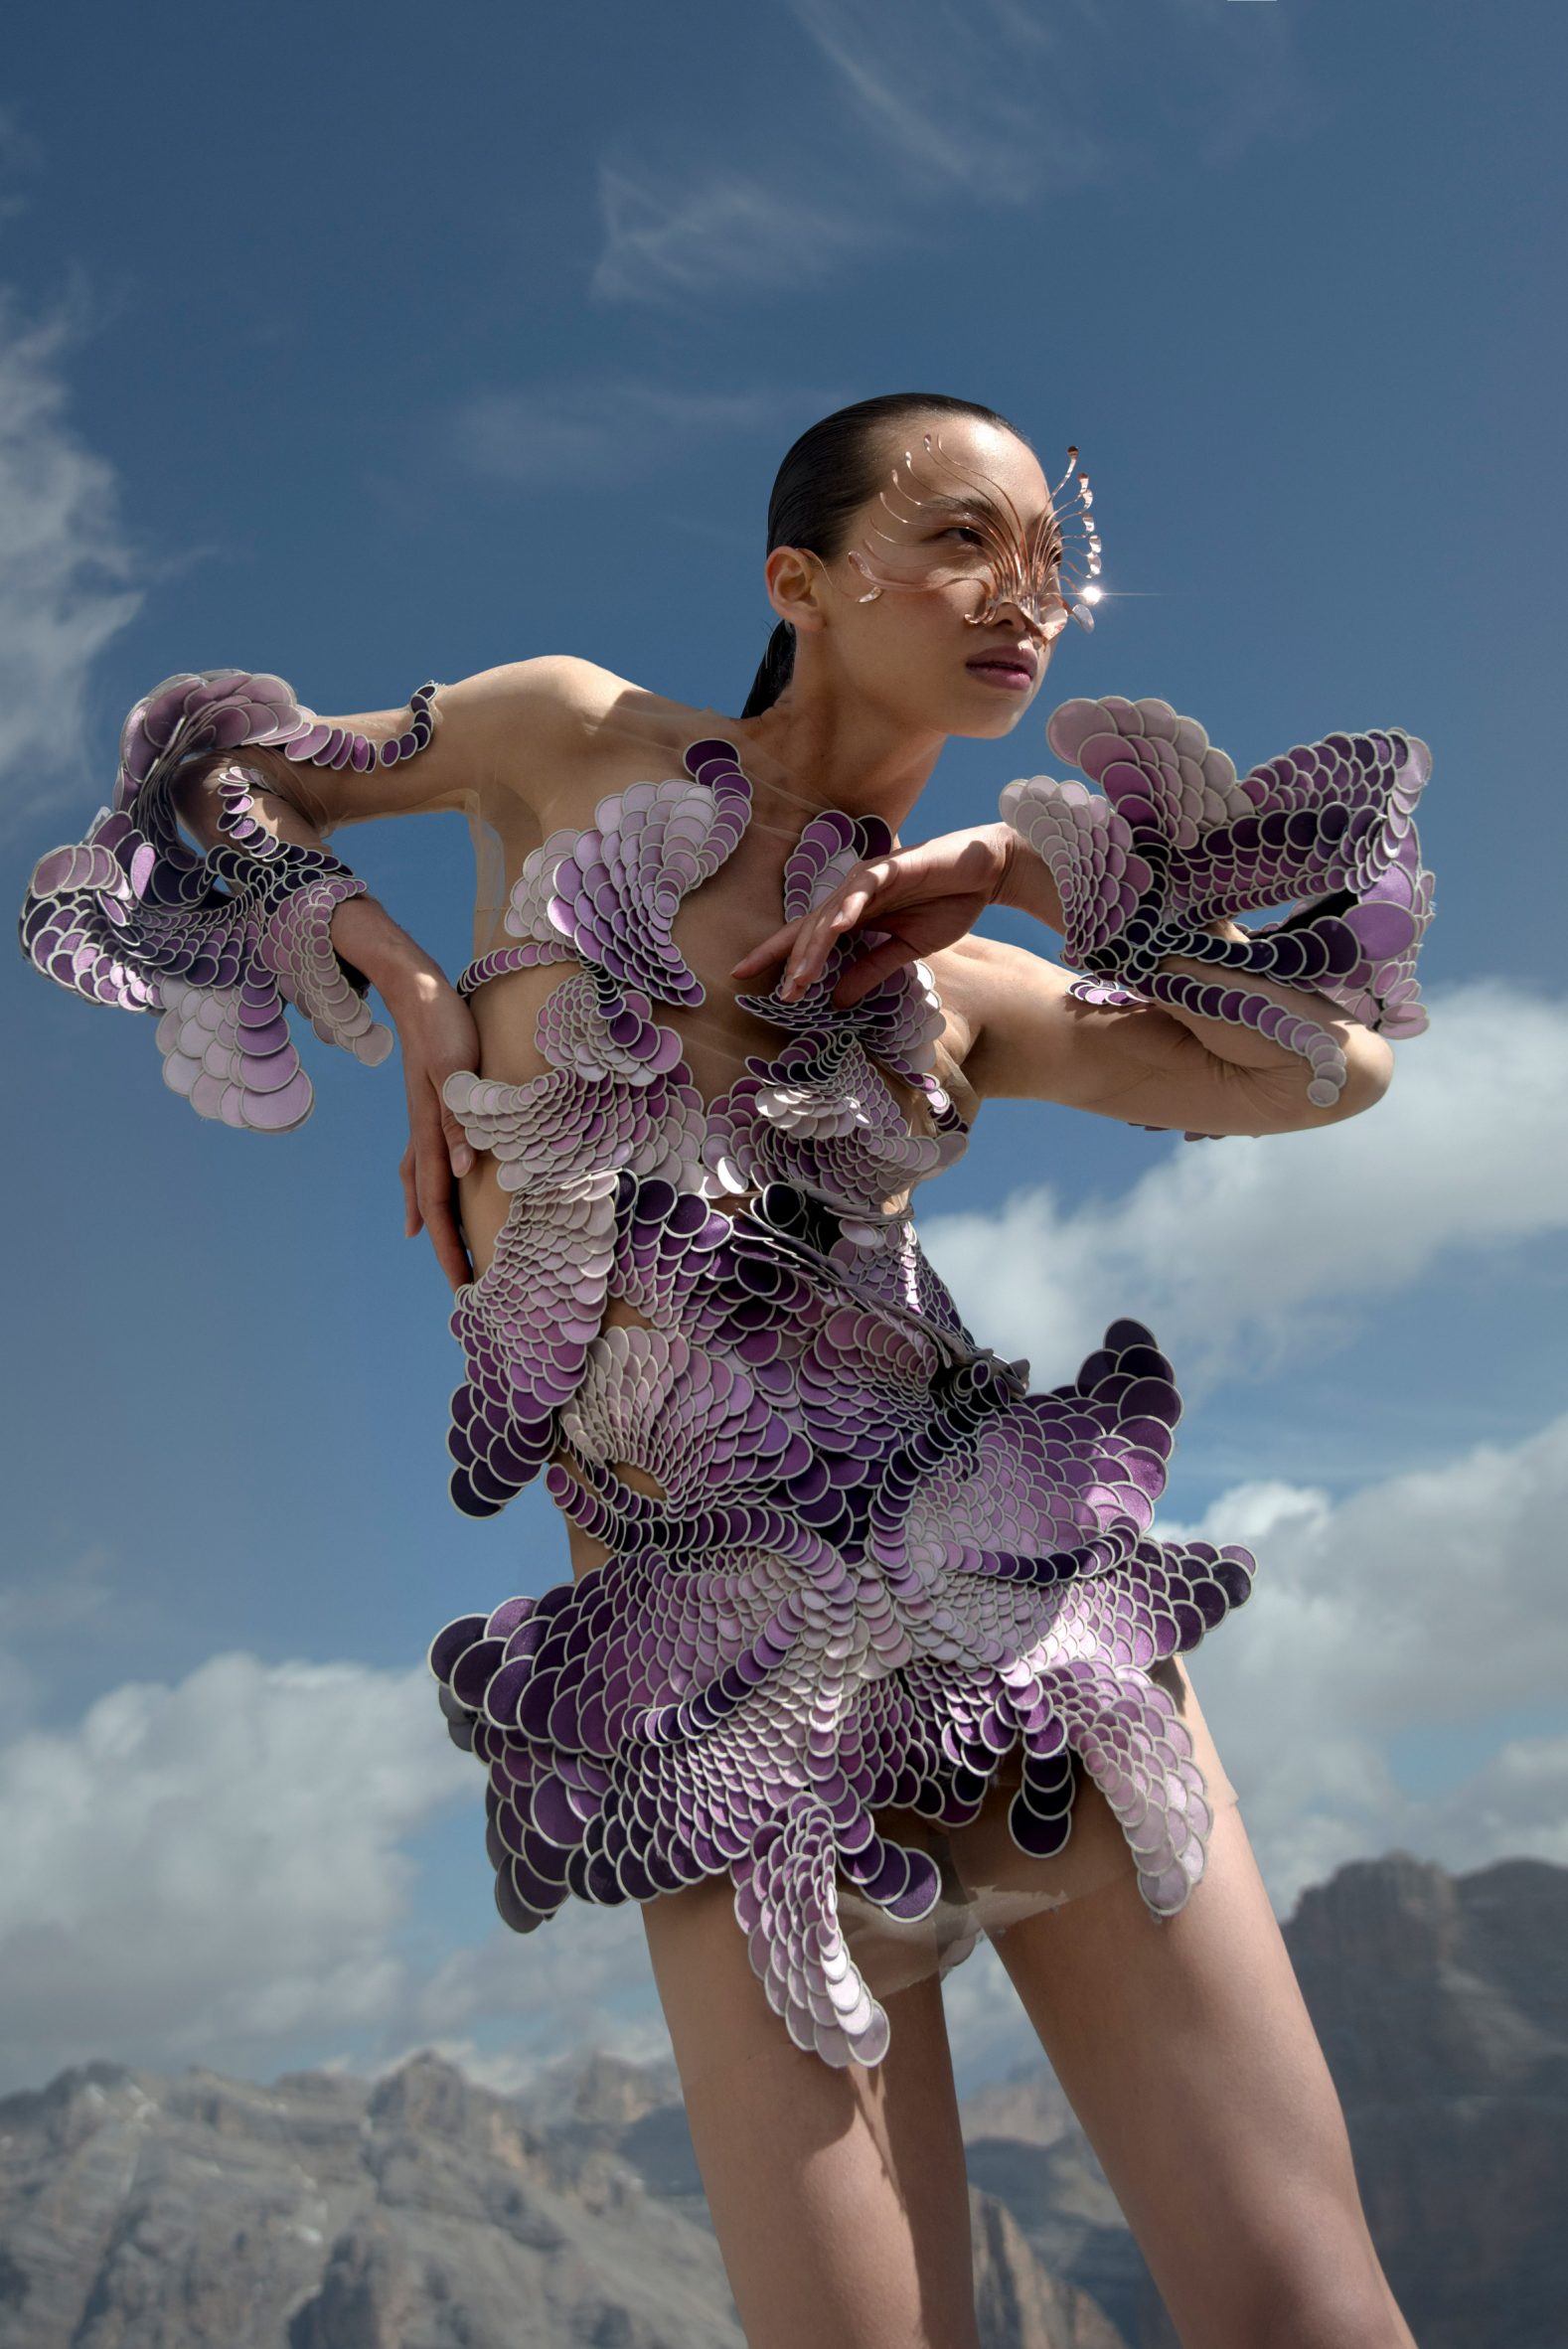 Iris van Herpen Recycles Plastic Waste into Sculptural Garments - Articl